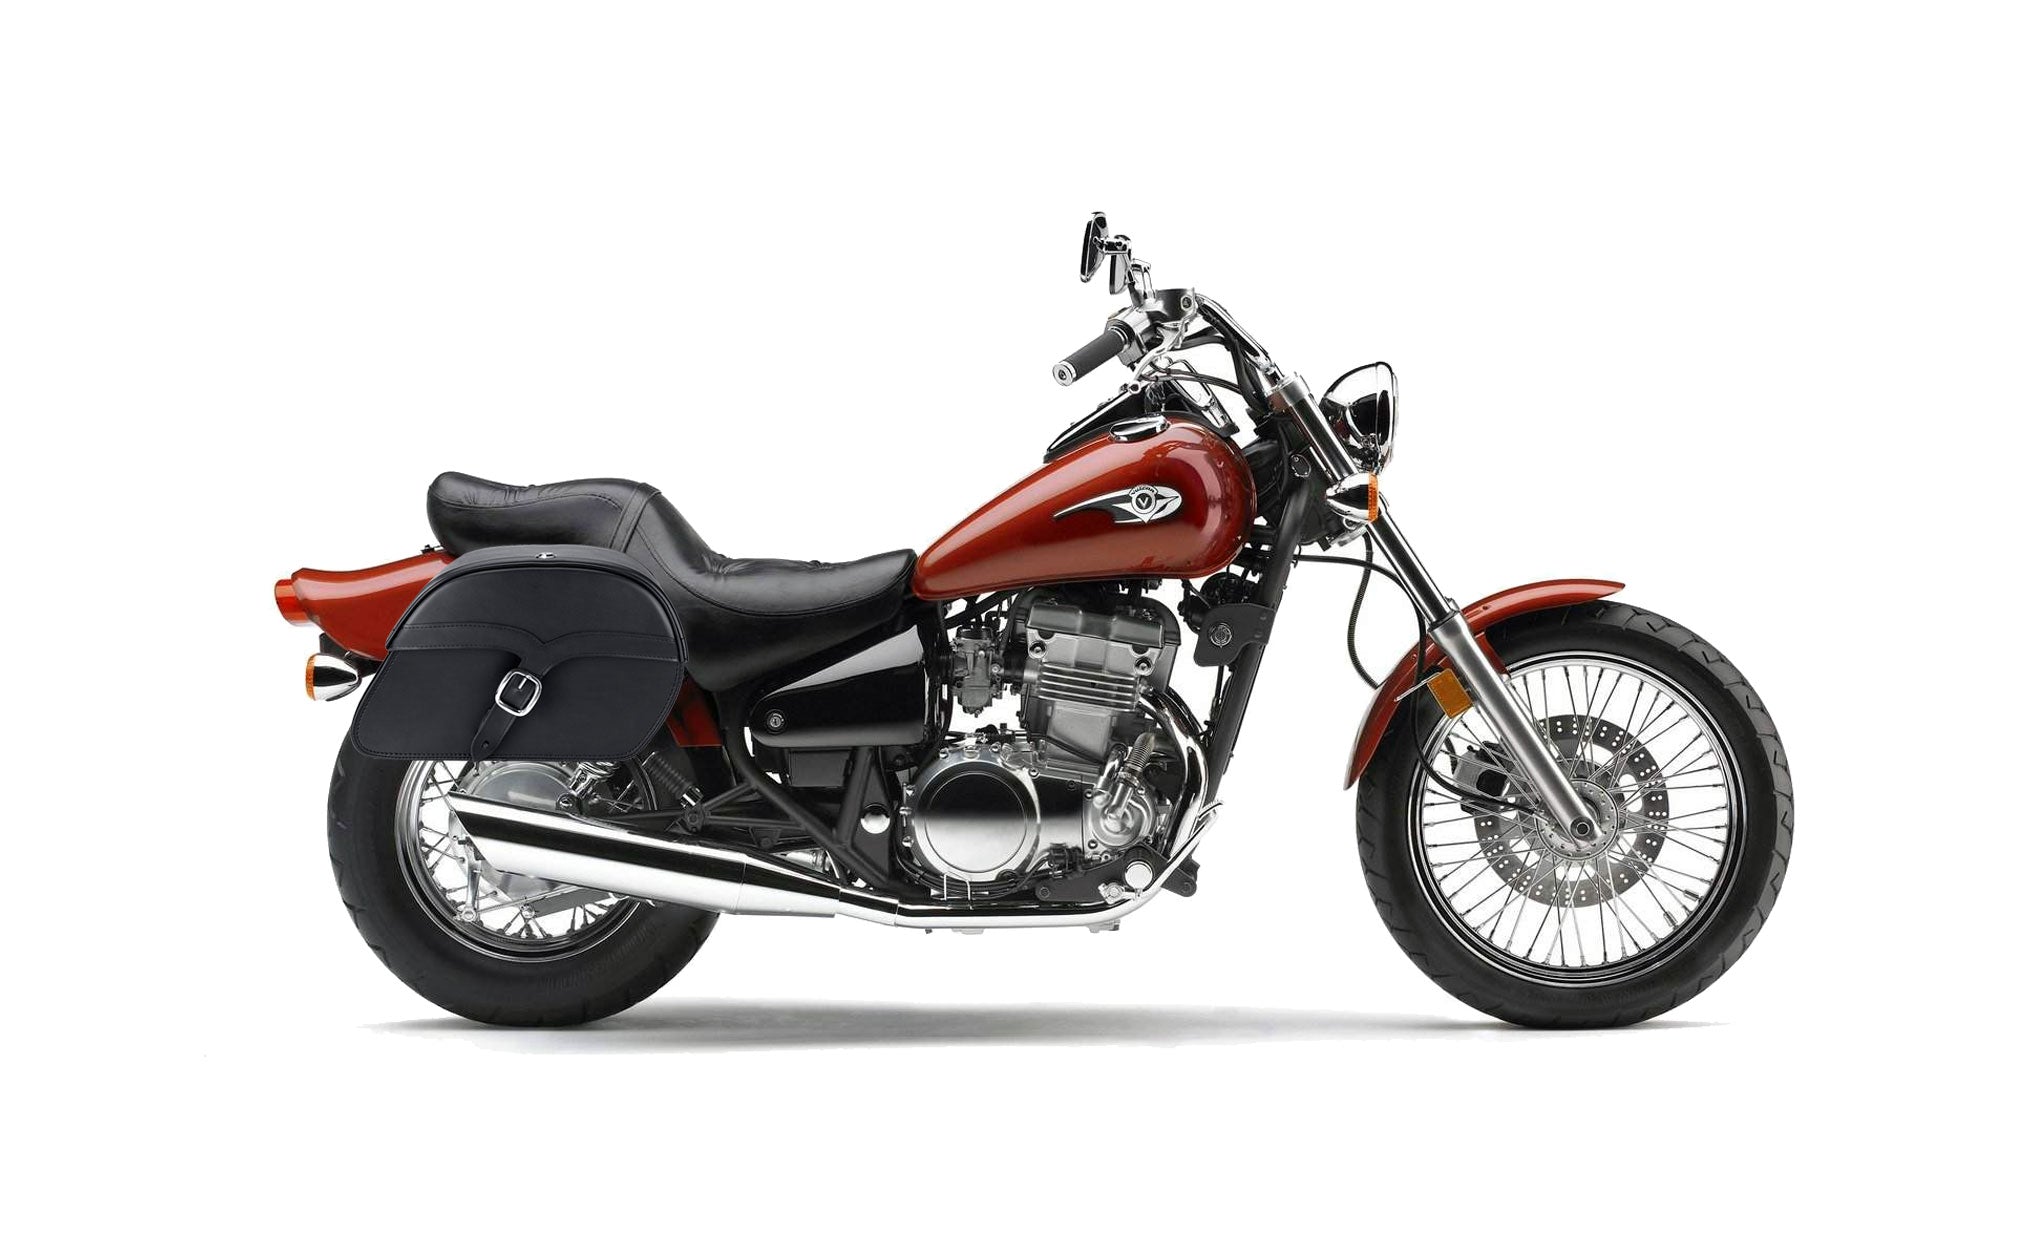 Viking Vintage Medium Kawasaki Vulcan 500 En500 Leather Motorcycle Saddlebags on Bike Photo @expand